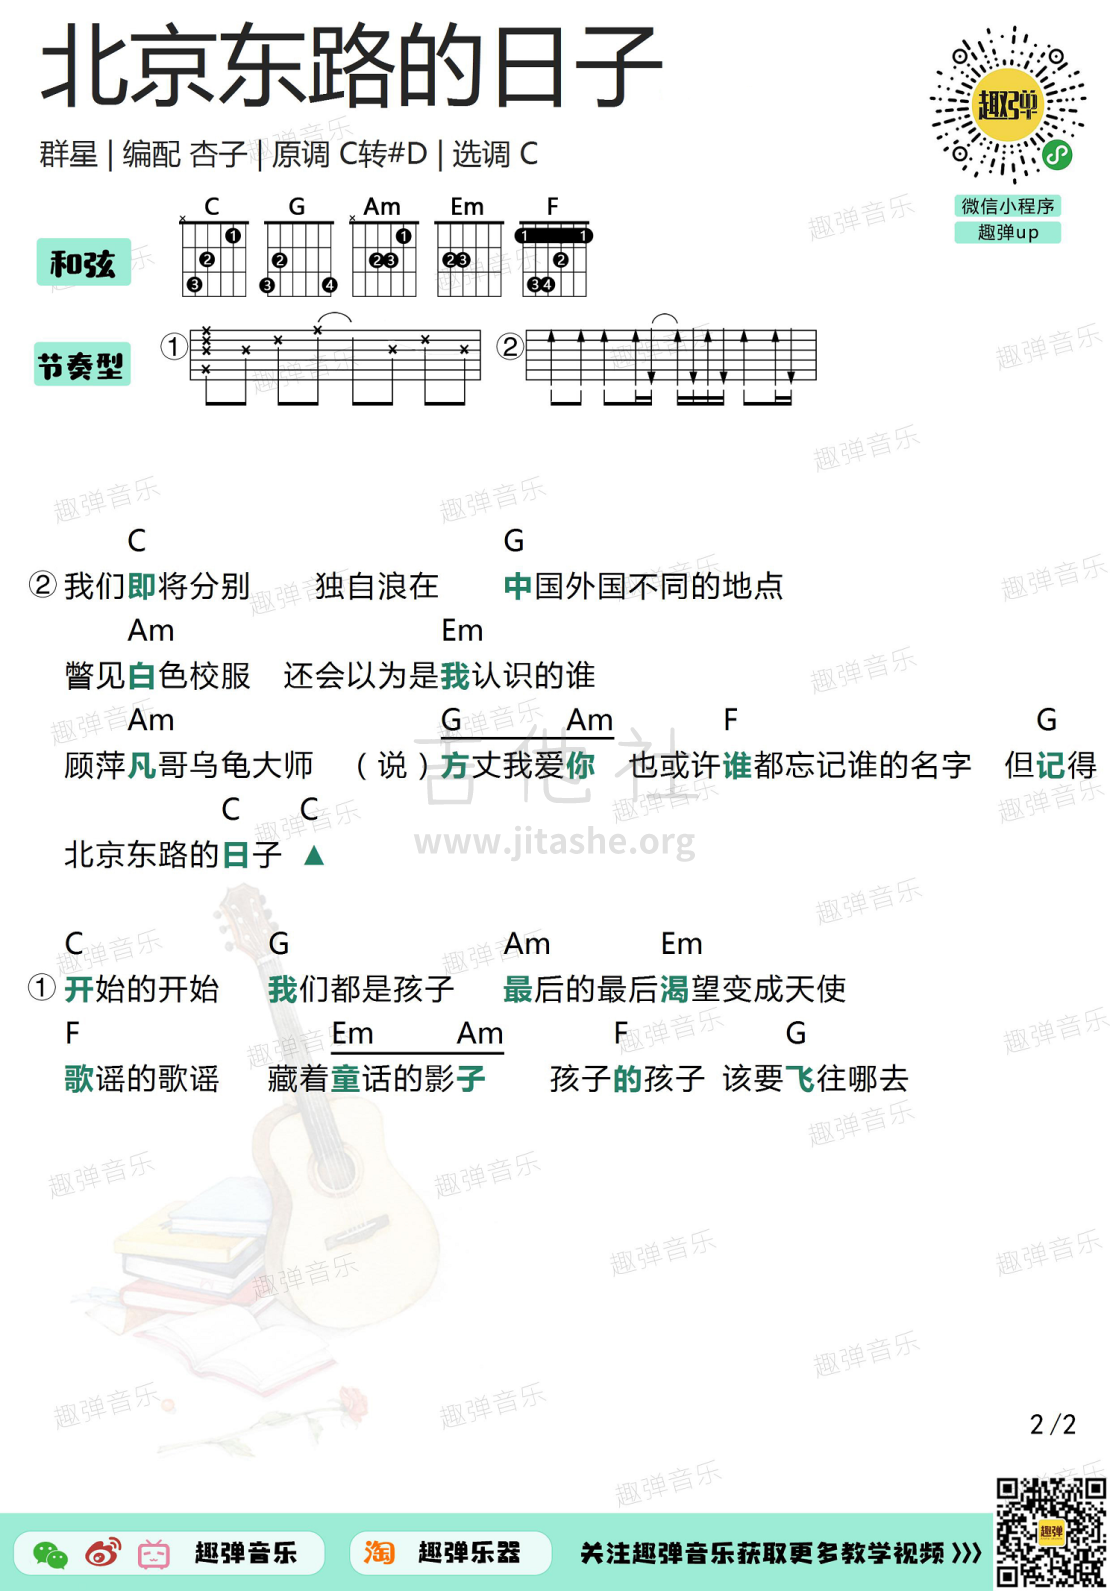 打印:北京东路的日子（高清C调和弦谱）吉他谱_群星(Various Artists)_北京东路的日子2.jpg